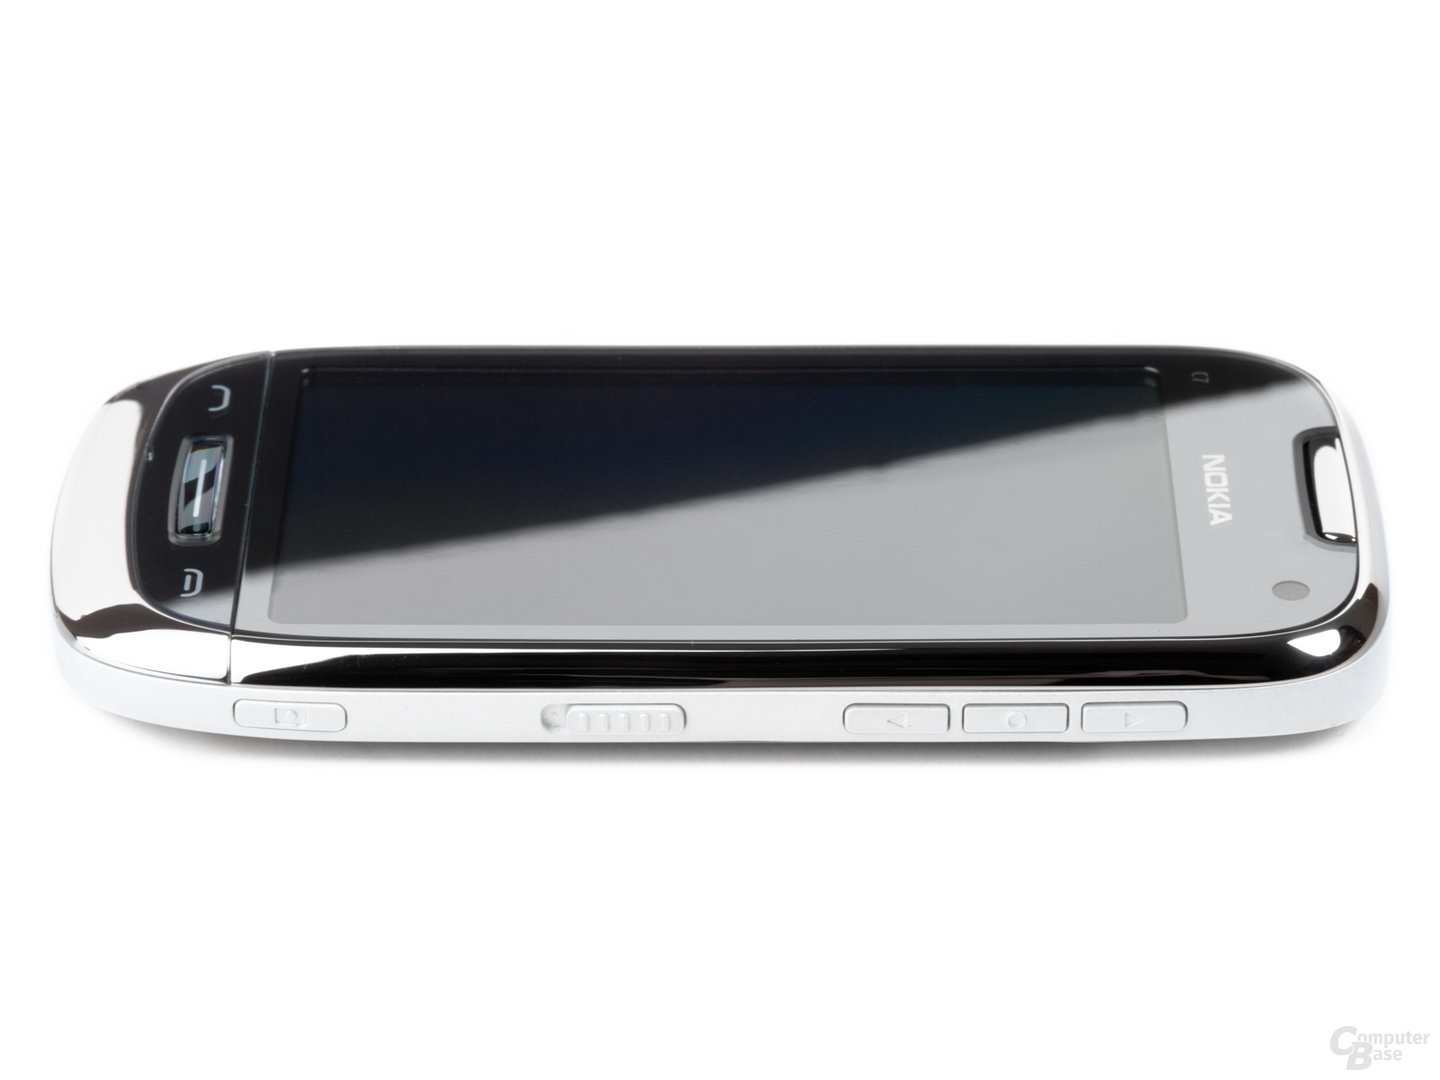 Nokia C7-00: Seitenansicht